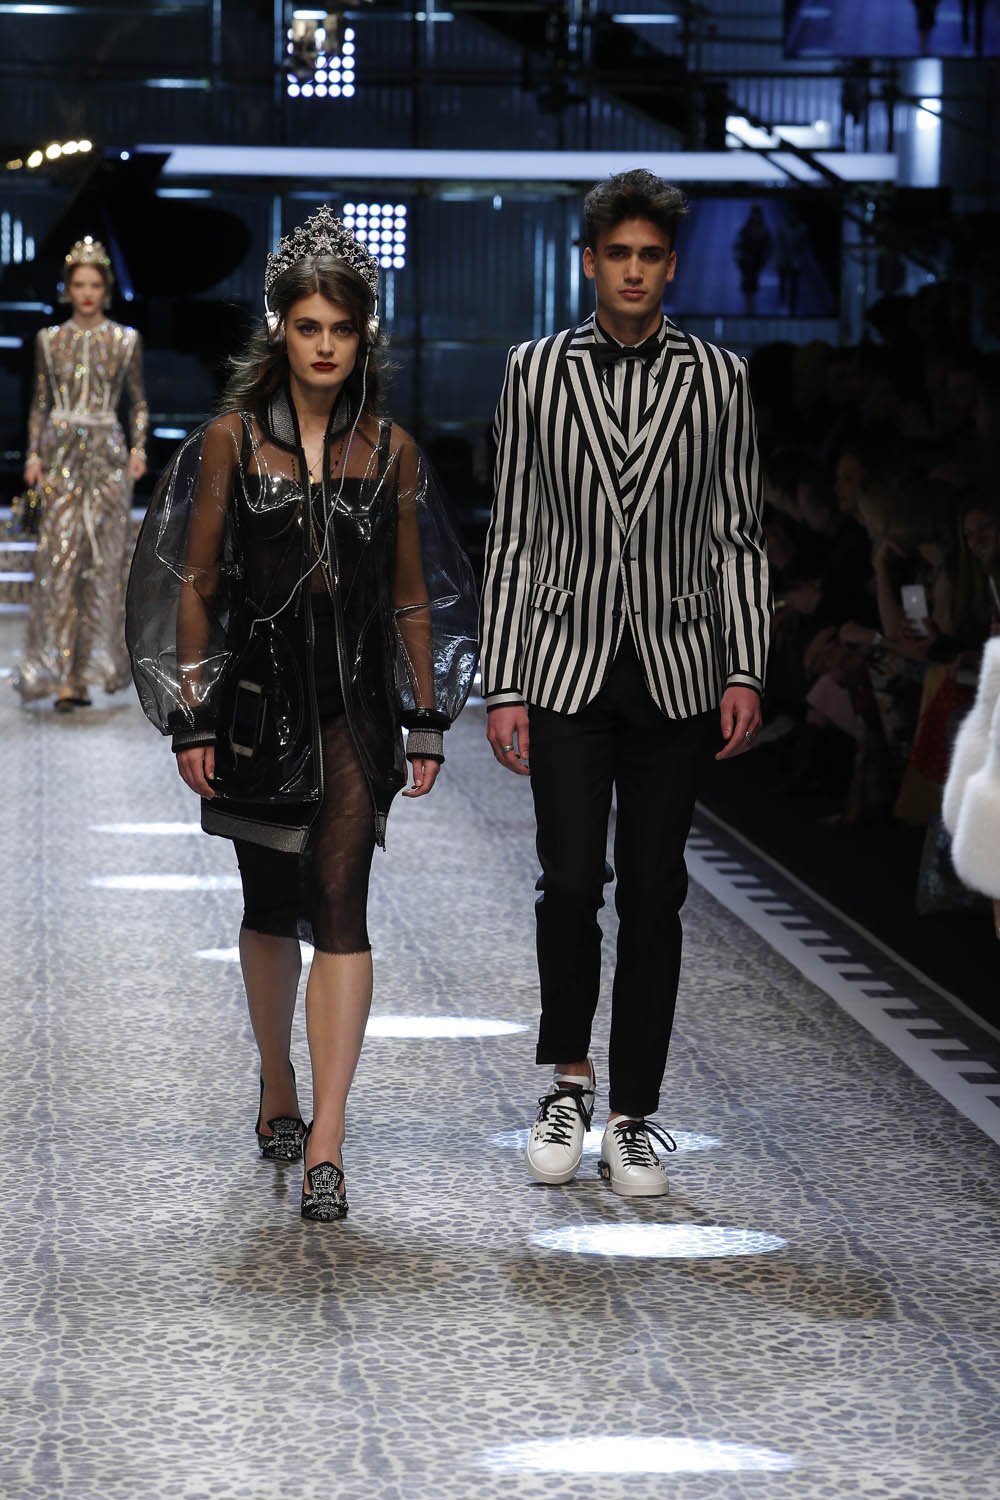 Dolce&Gabbana_women's fashion show fw17-18_Runway_images (55)